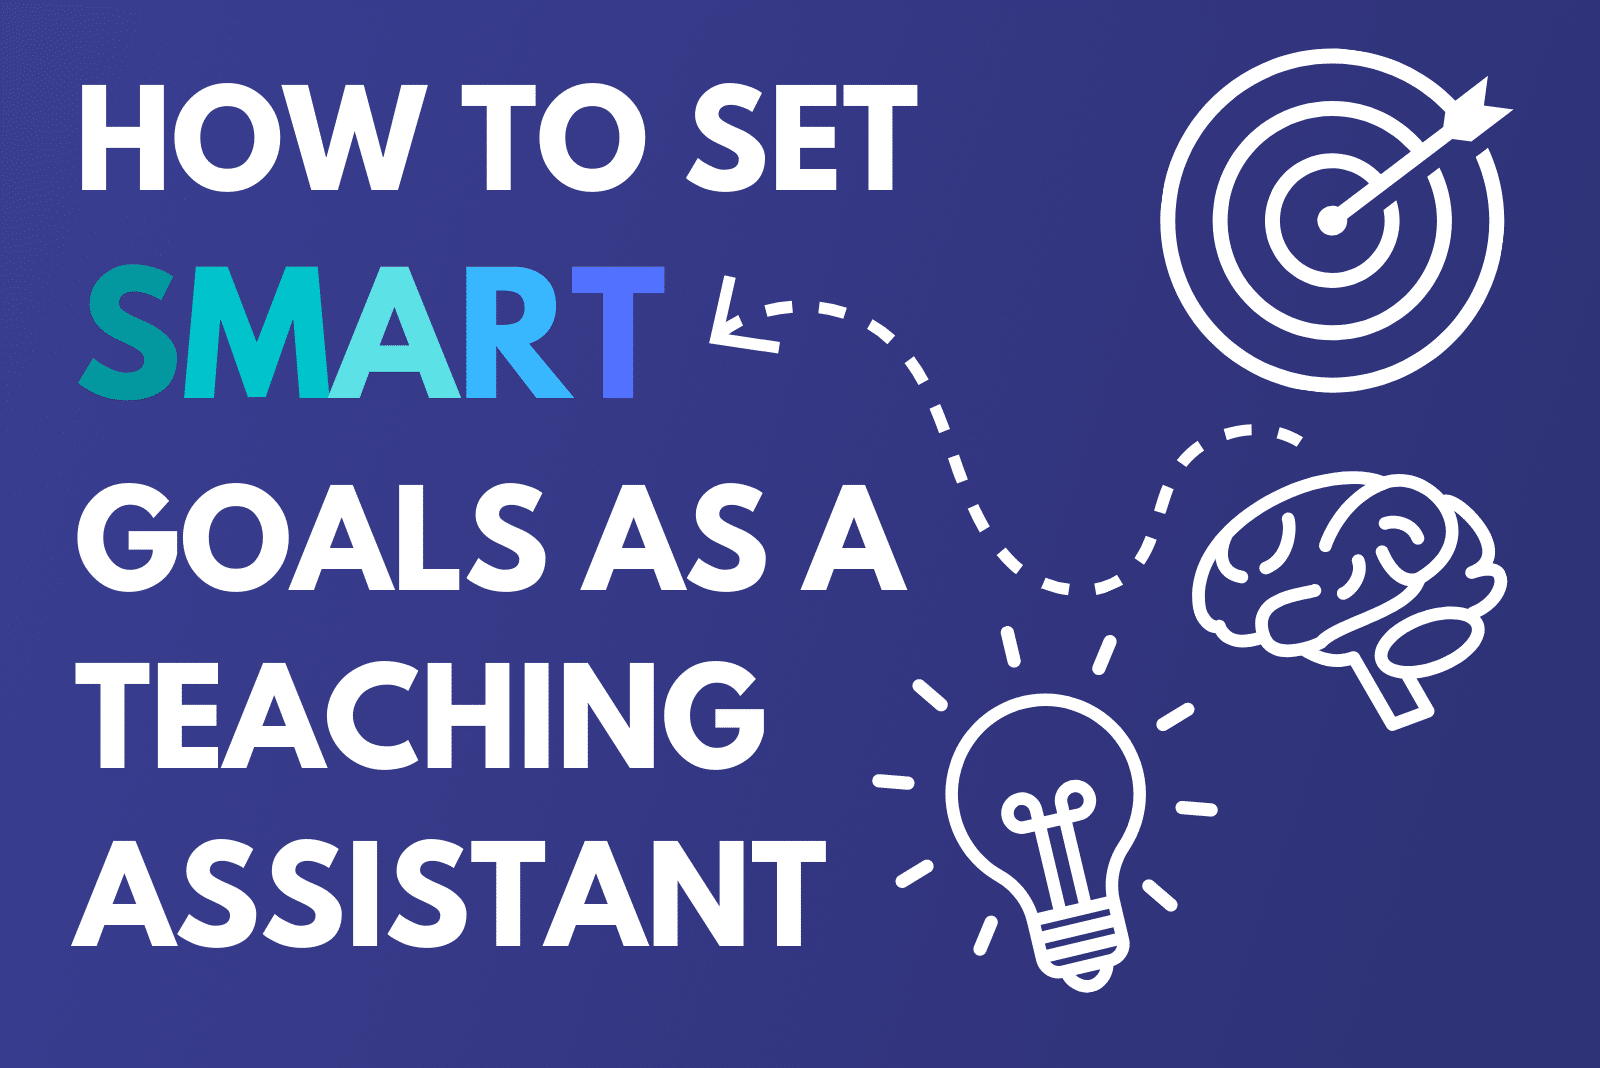 Teaching Assistant SMART Goals